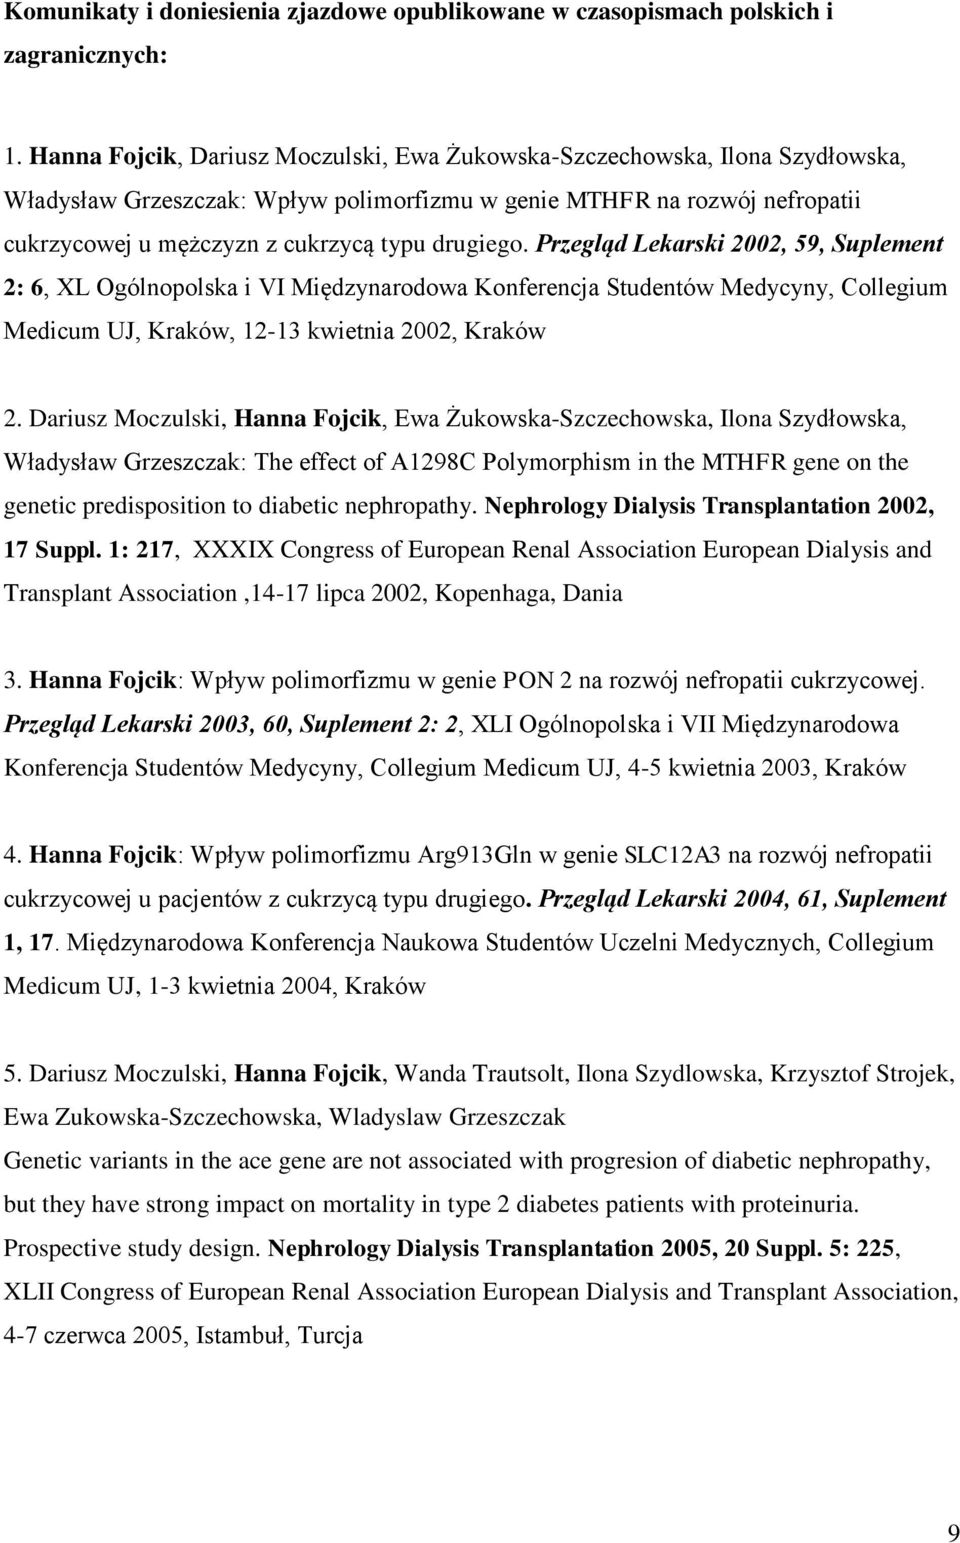 drugiego. Przegląd Lekarski 2002, 59, Suplement 2: 6, XL Ogólnopolska i VI Międzynarodowa Konferencja Studentów Medycyny, Collegium Medicum UJ, Kraków, 12-13 kwietnia 2002, Kraków 2.